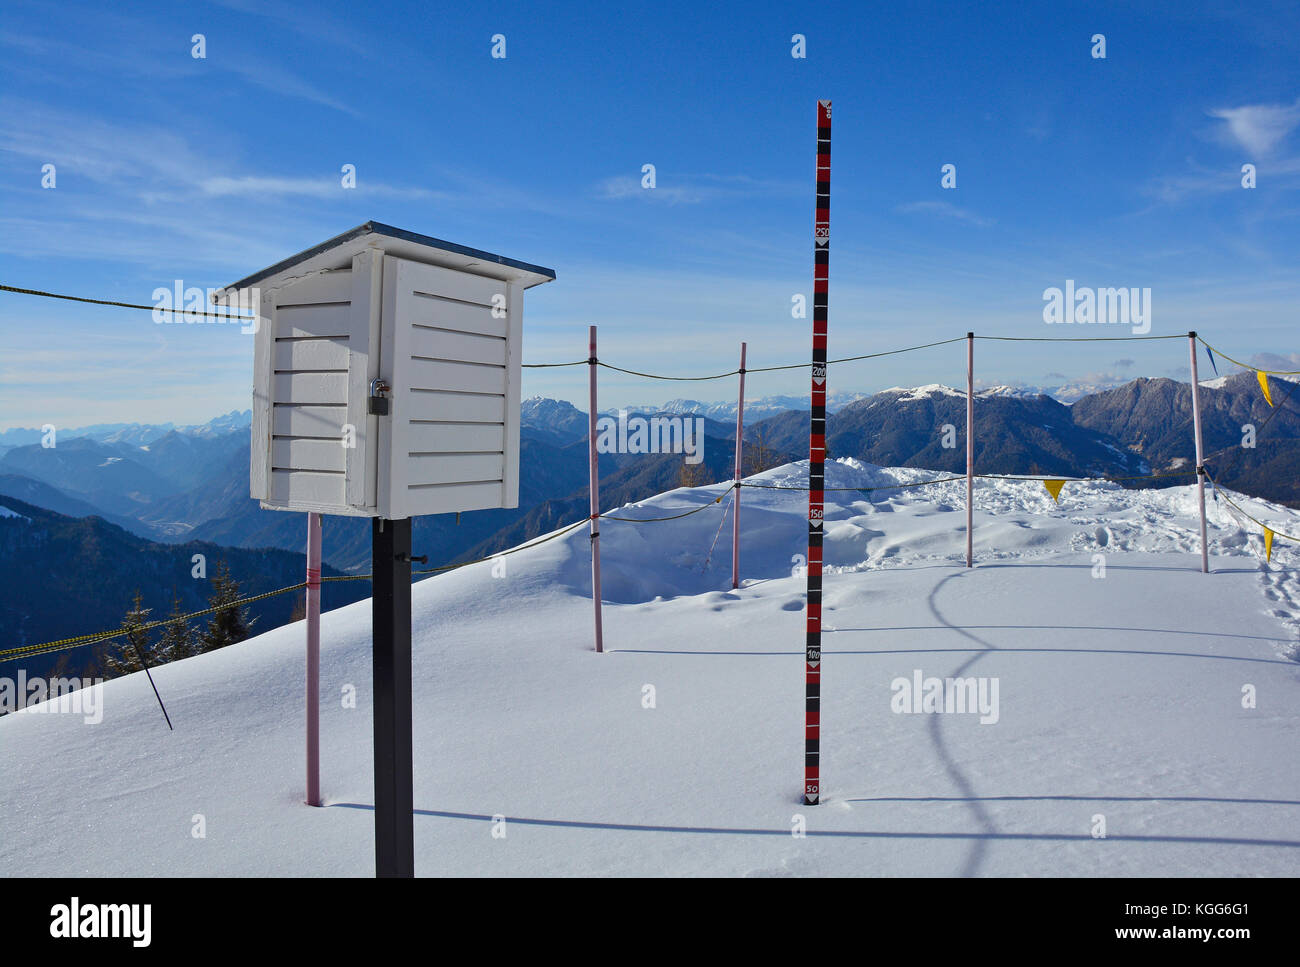 Une station météo dans la neige sur le monte lussari dans la région de Frioul-Vénétie julienne, au nord est de l'italie Banque D'Images